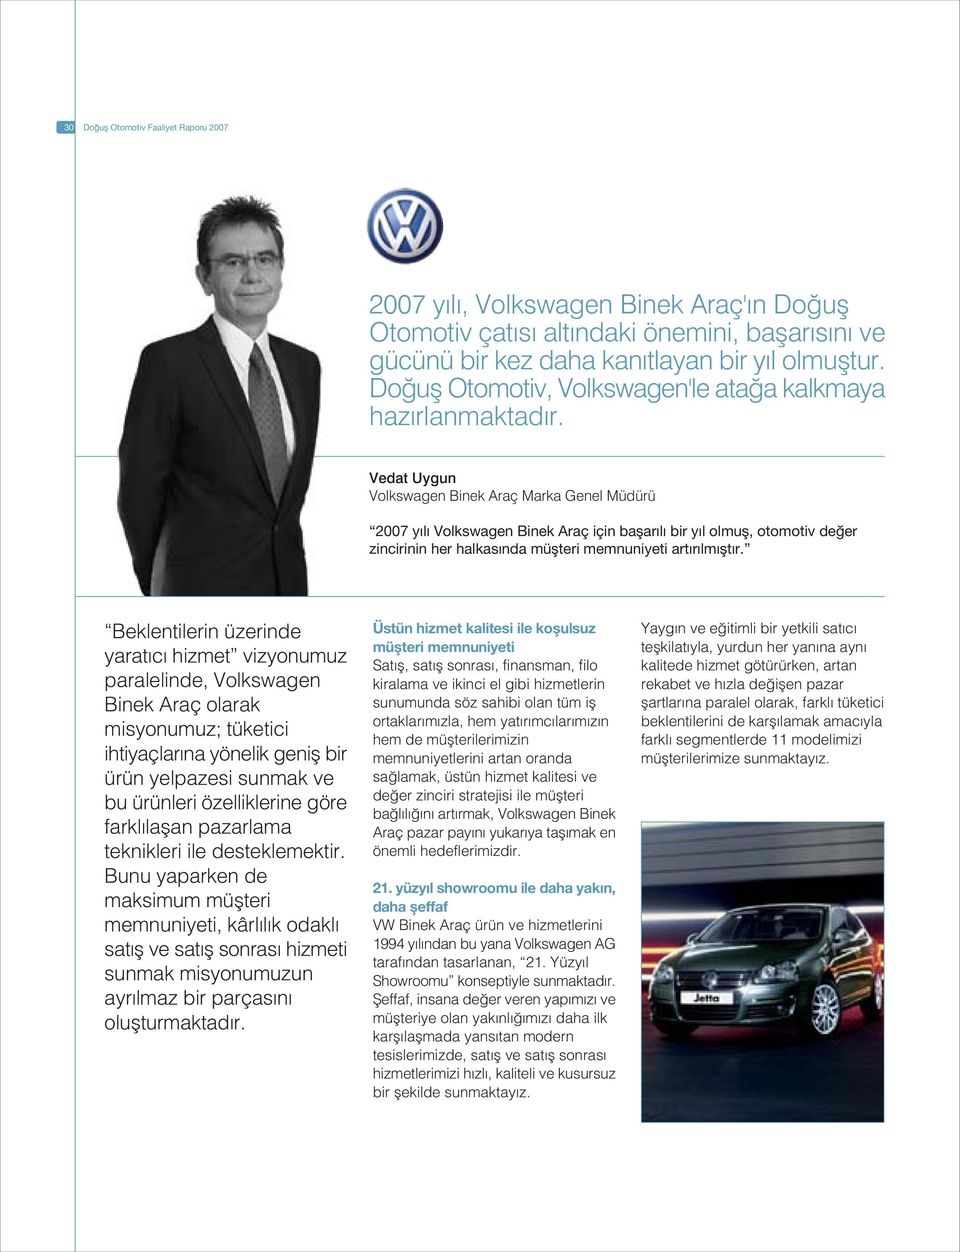 Vedat Uygun Volkswagen Binek Araç Marka Genel Müdürü 2007 y l Volkswagen Binek Araç için baflar l bir y l olmufl, otomotiv de er zincirinin her halkas nda müflteri memnuniyeti art r lm flt r.